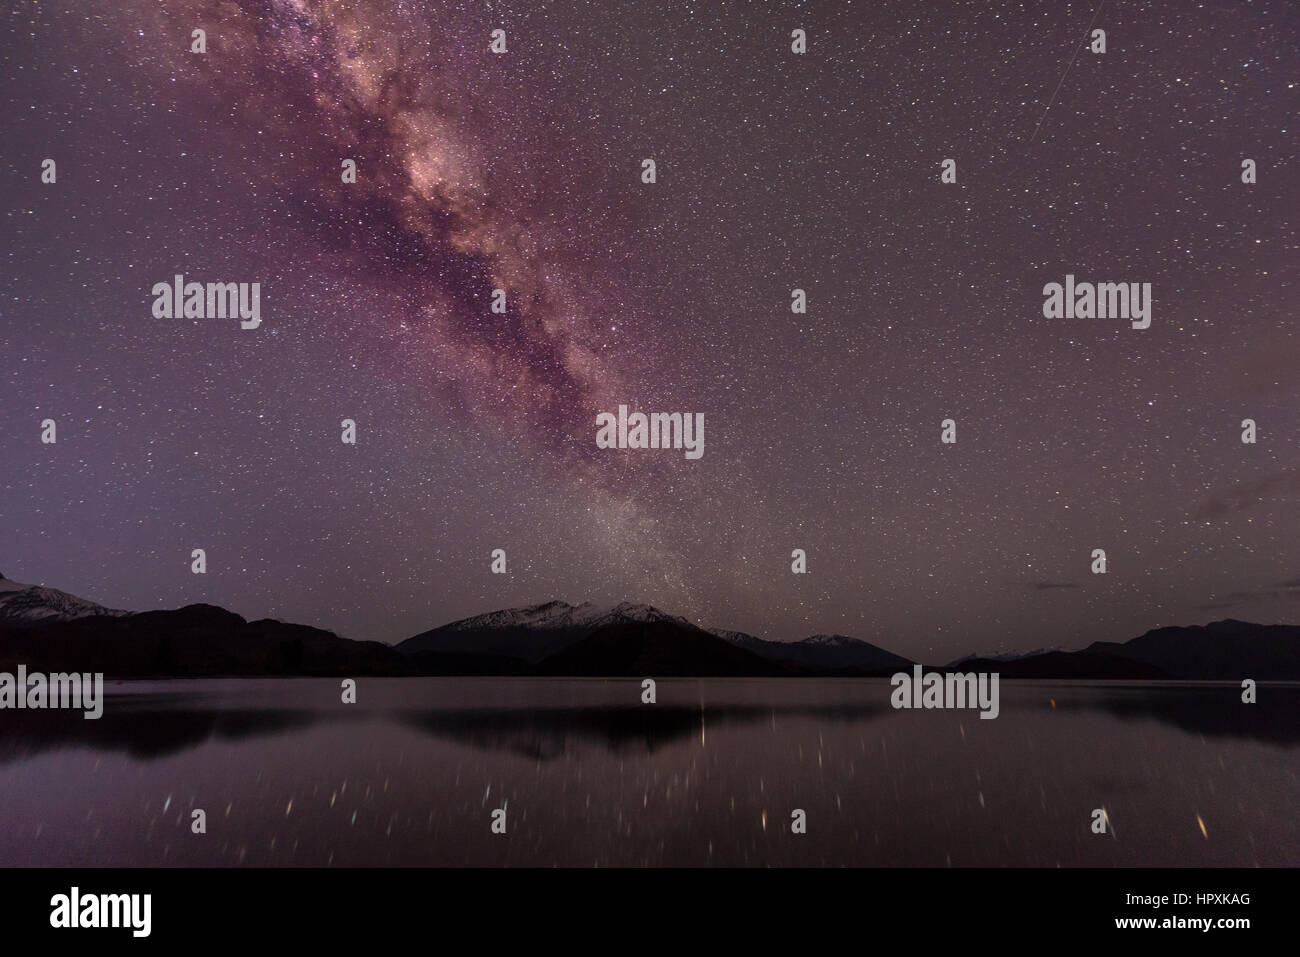 Le lac Wanaka, scène de nuit avec des étoiles et Voie lactée, les étoiles en miroir dans l'eau, Glendhu Bay, Otago, Nouvelle-Zélande, Southland Banque D'Images